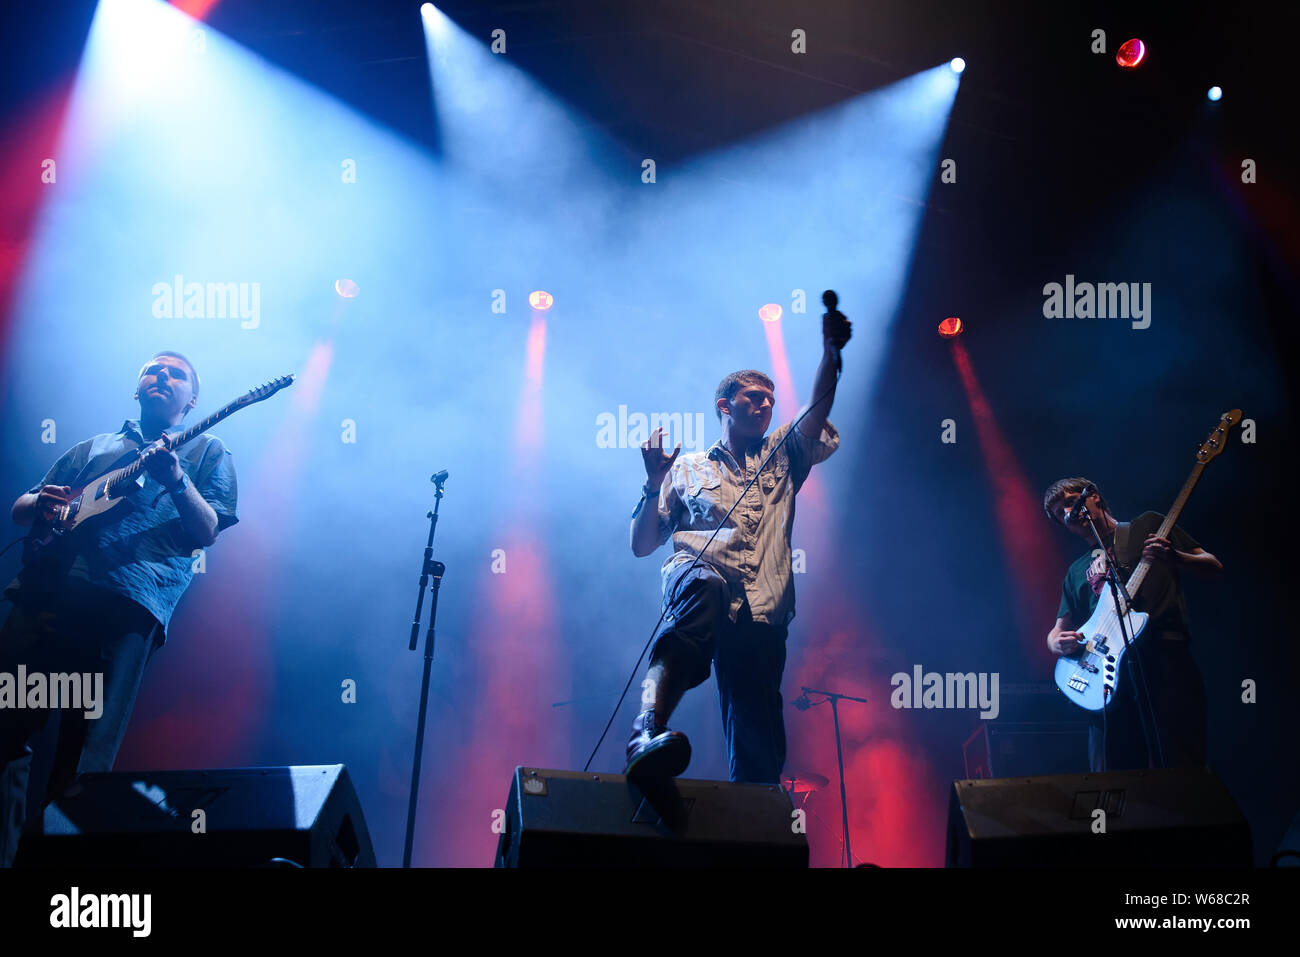 BILBAO, ESPAGNE - JUL 13: La honte (groupe punk rock) se déroule en concert au BBK Live 2019 Music Festival le 13 juillet 2019 à Bilbao, Espagne. Banque D'Images